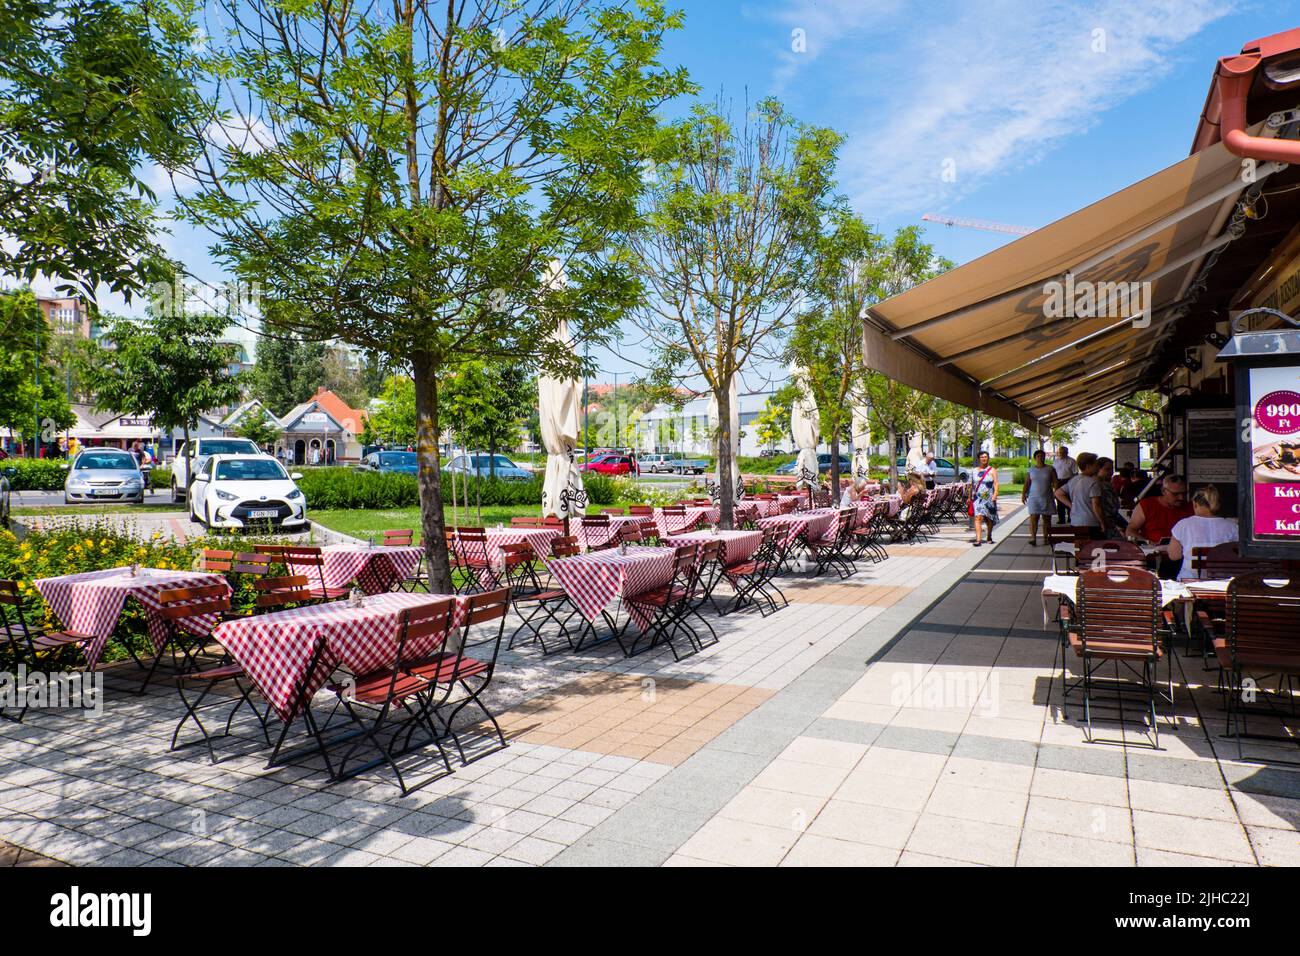 Restaurant terraces, Hévíz Nagyparkoló tér, Heviz, Hungary Stock Photo